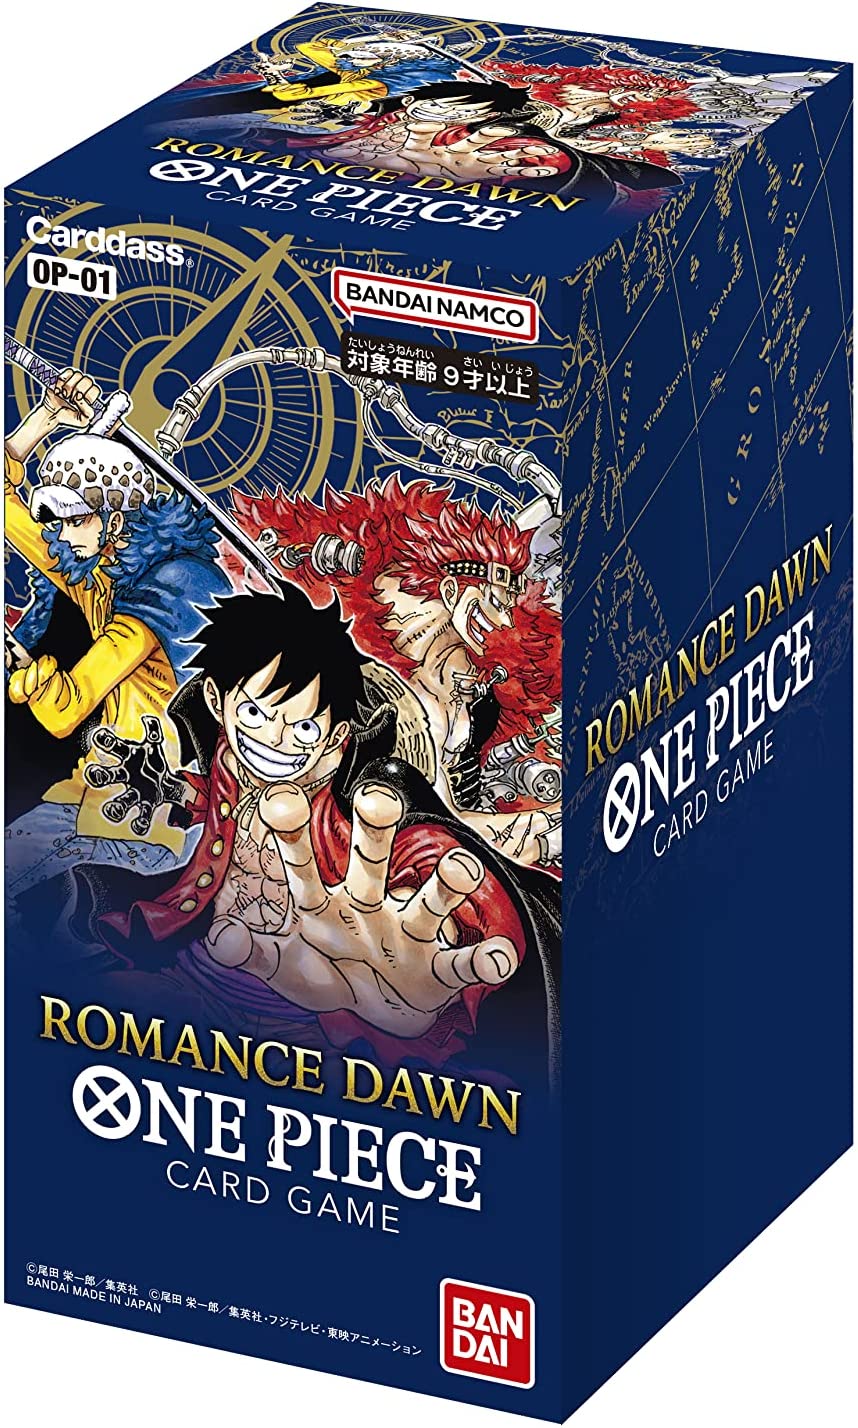 ムのロマン ONE PIECE カードゲーム romance dawn 未開封 2BOX らくらくメ - conexaoi9.com.br